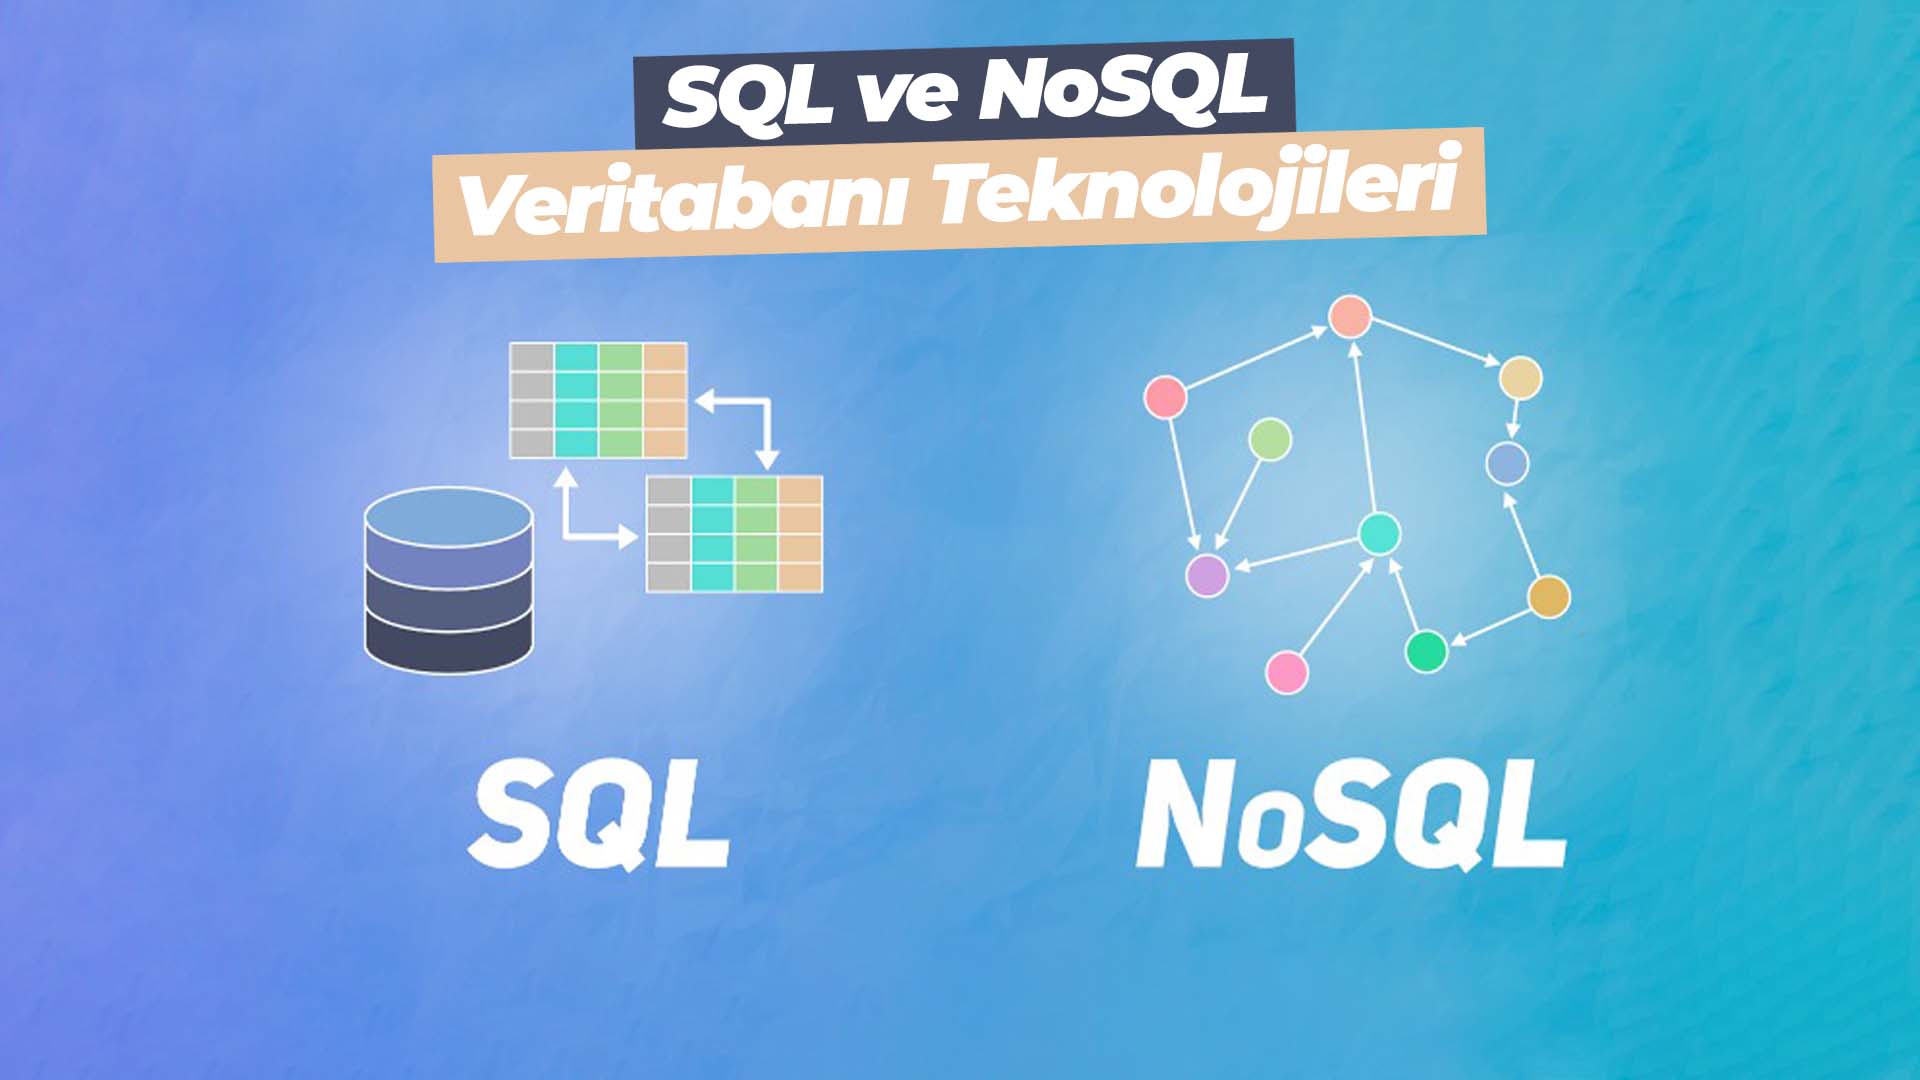 SQL ve NoSQL veri tabanı teknolojileri